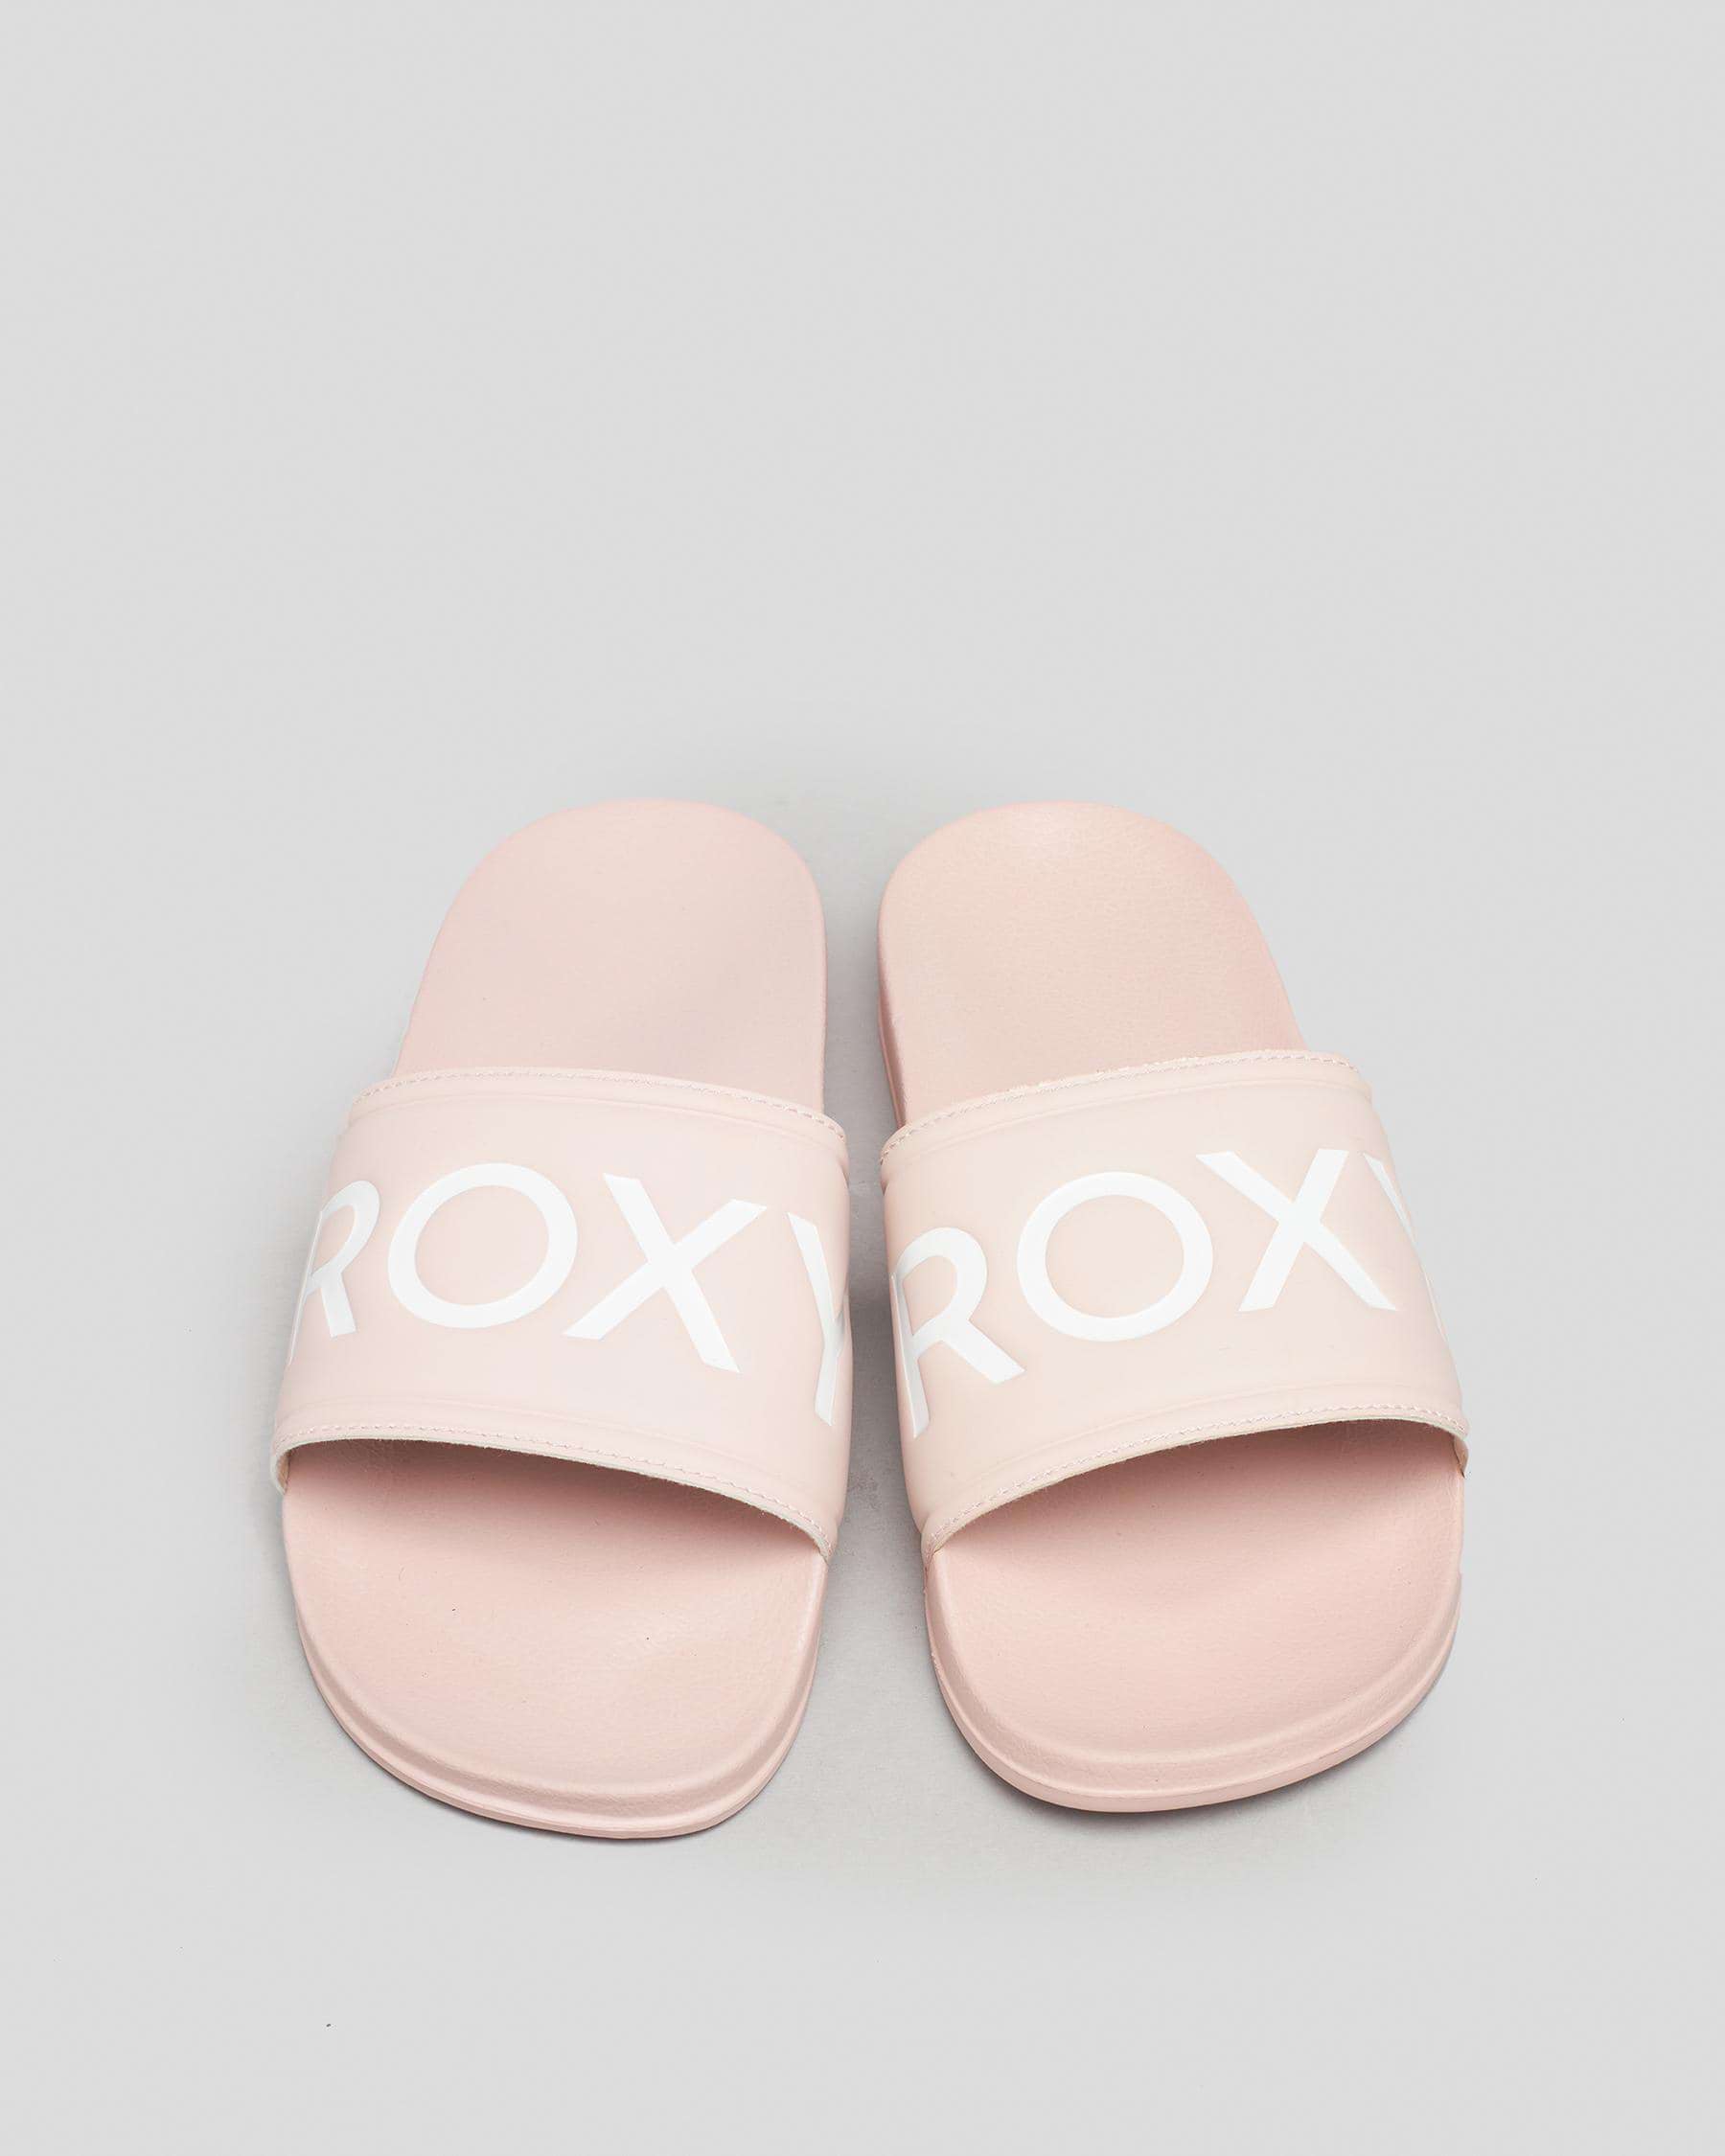 Roxy Slippy Slide Sandals In Lt Peach - Fast Shipping & Easy Returns ...